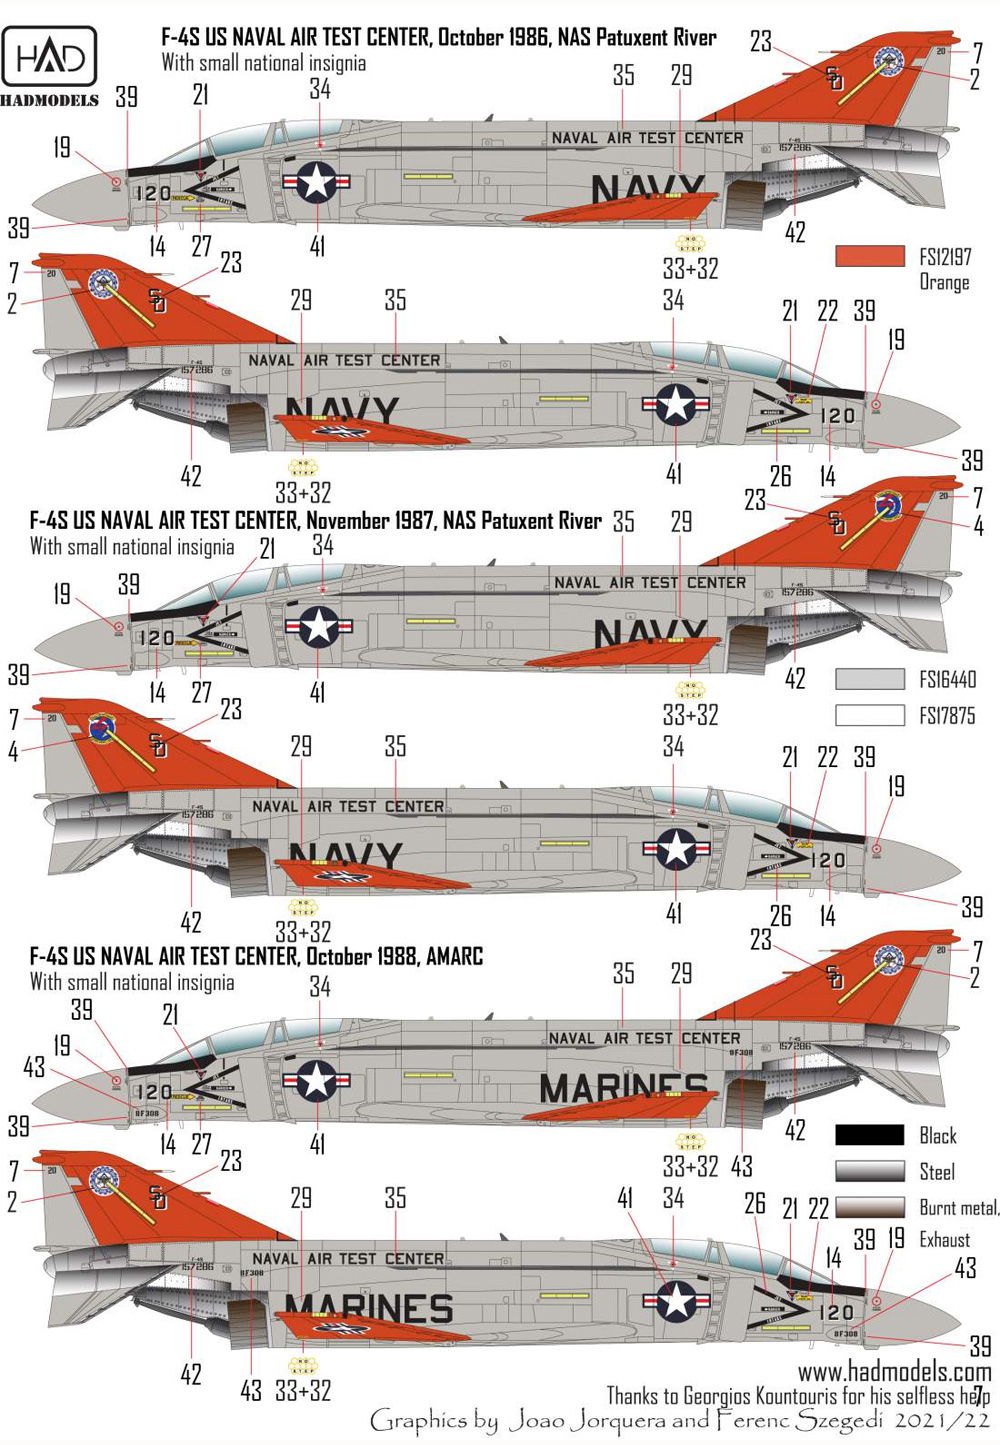 F-4S/J ファントム 2 海軍航空試験センター ファイナル・カウントダウン デカール デカール (HAD MODELS 1/48 デカール No.48255) 商品画像_4